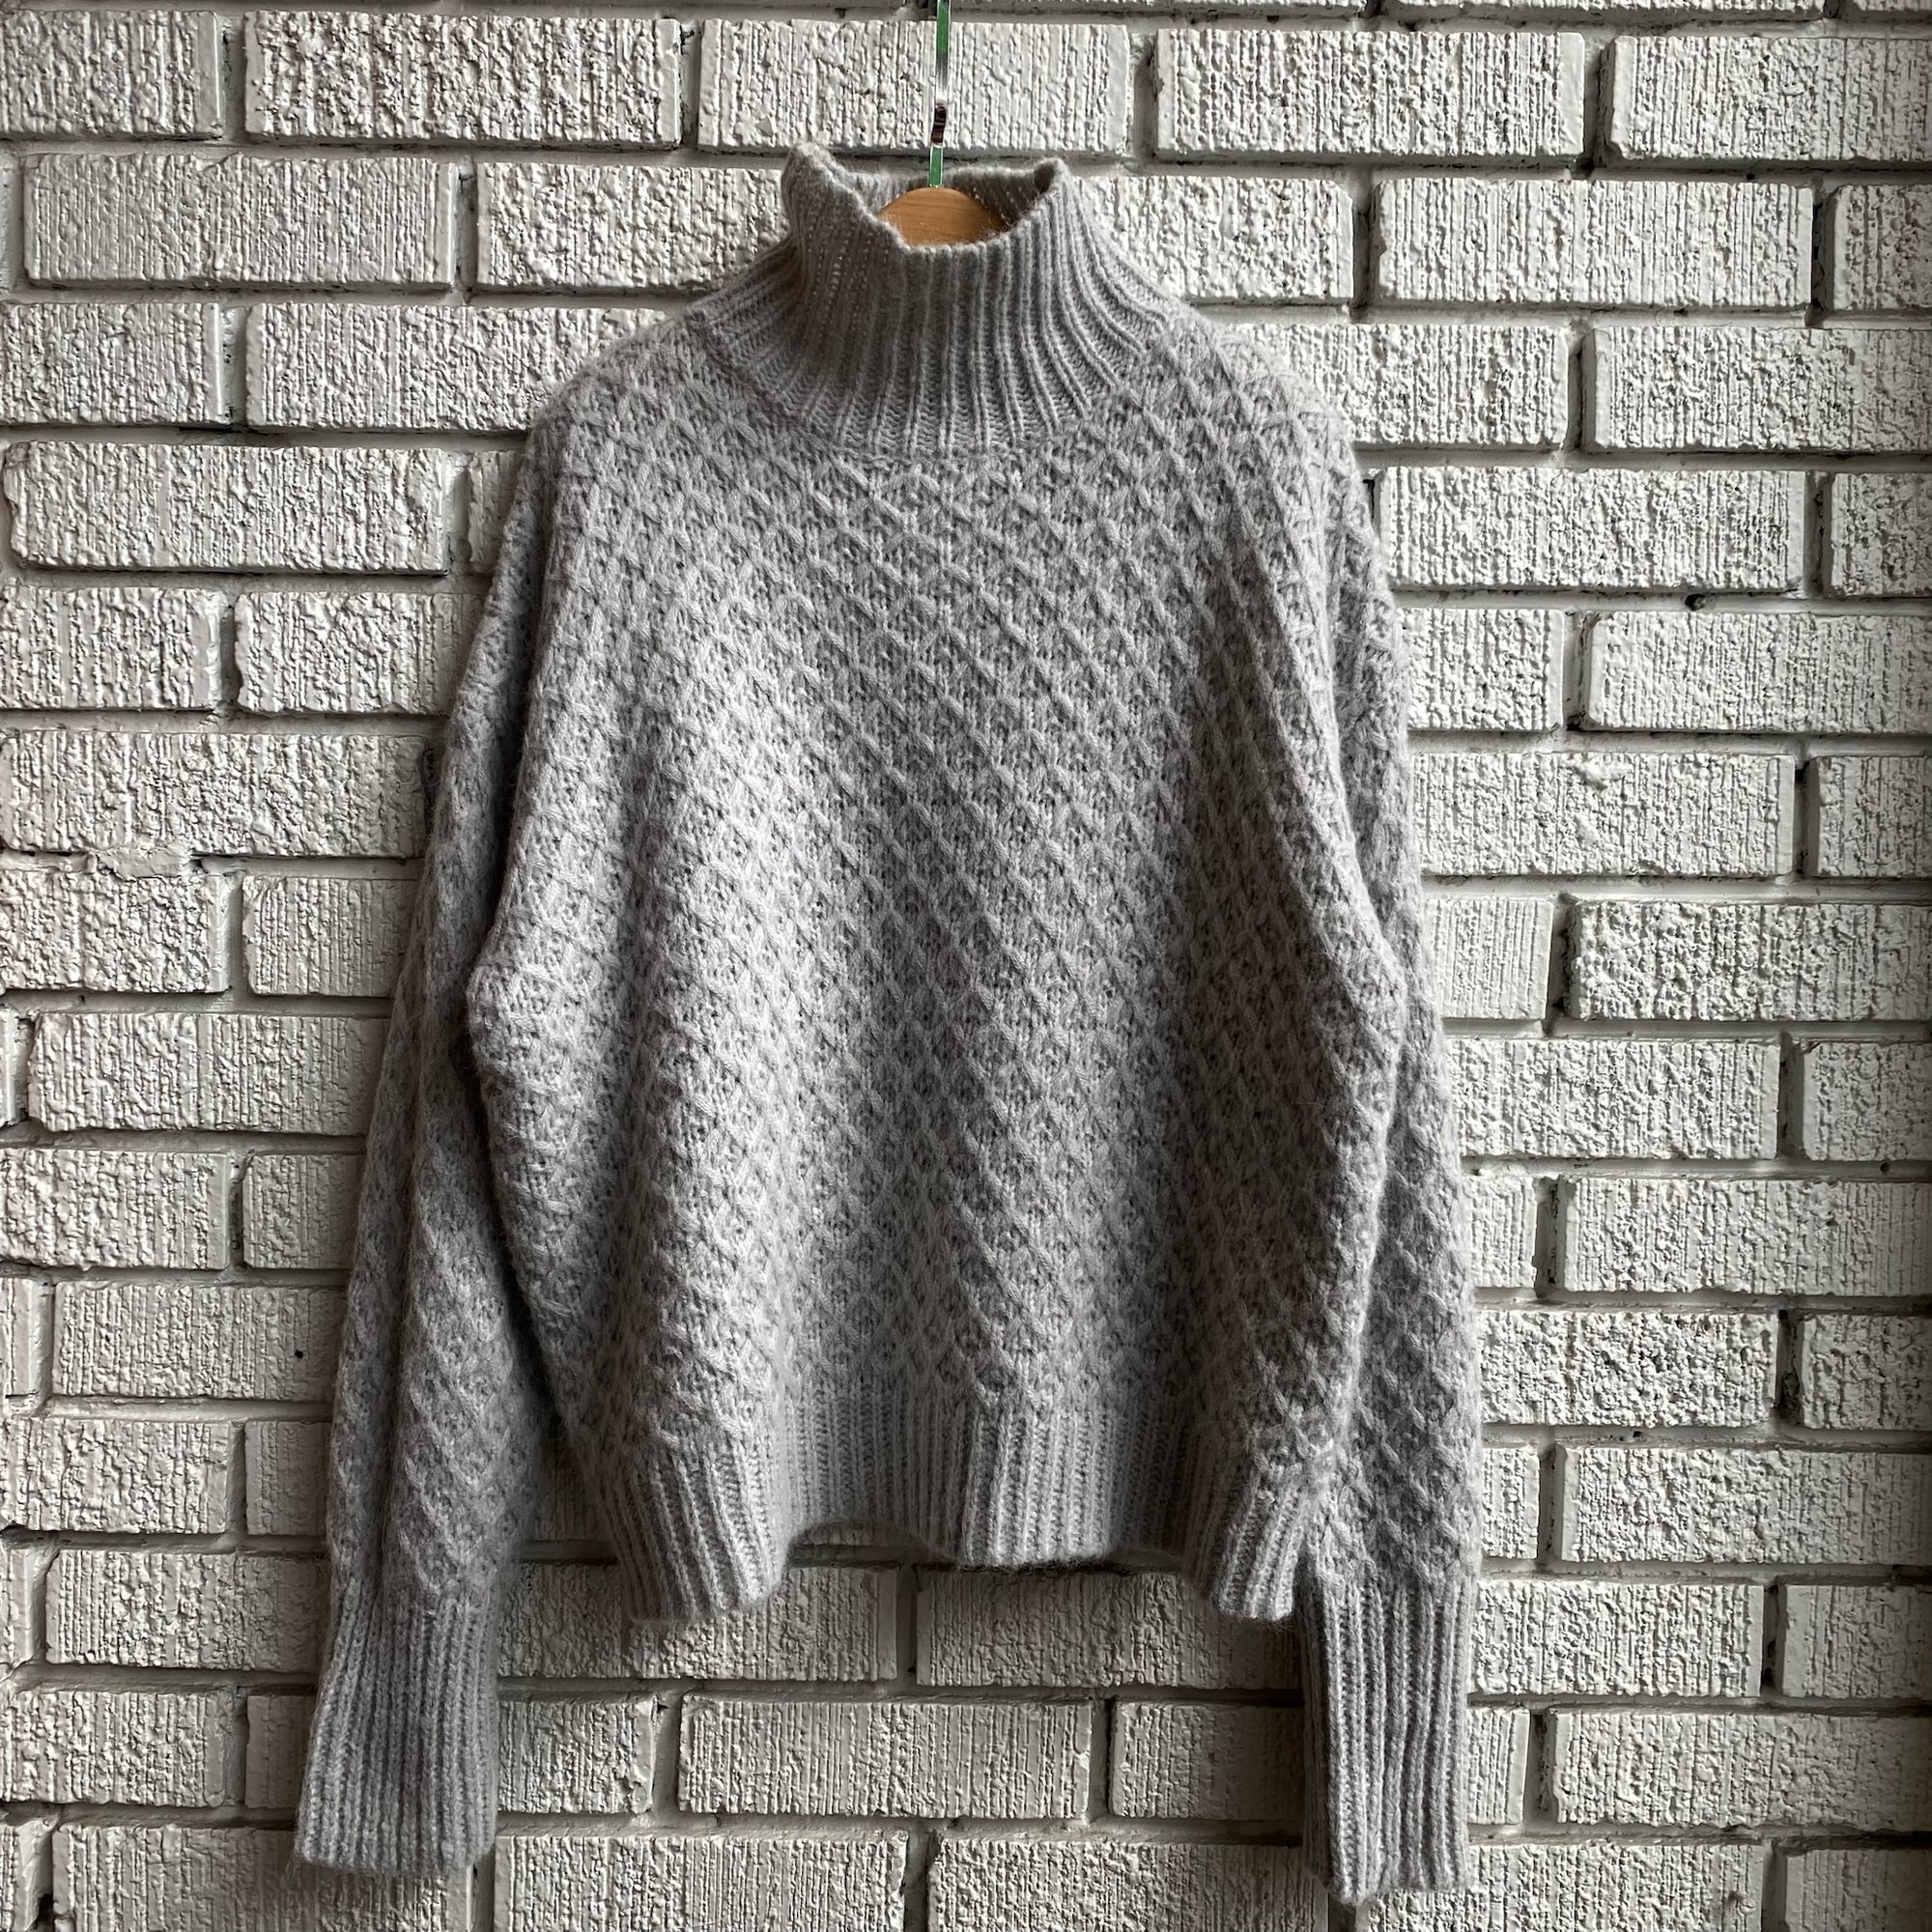 MARGOT Sweater